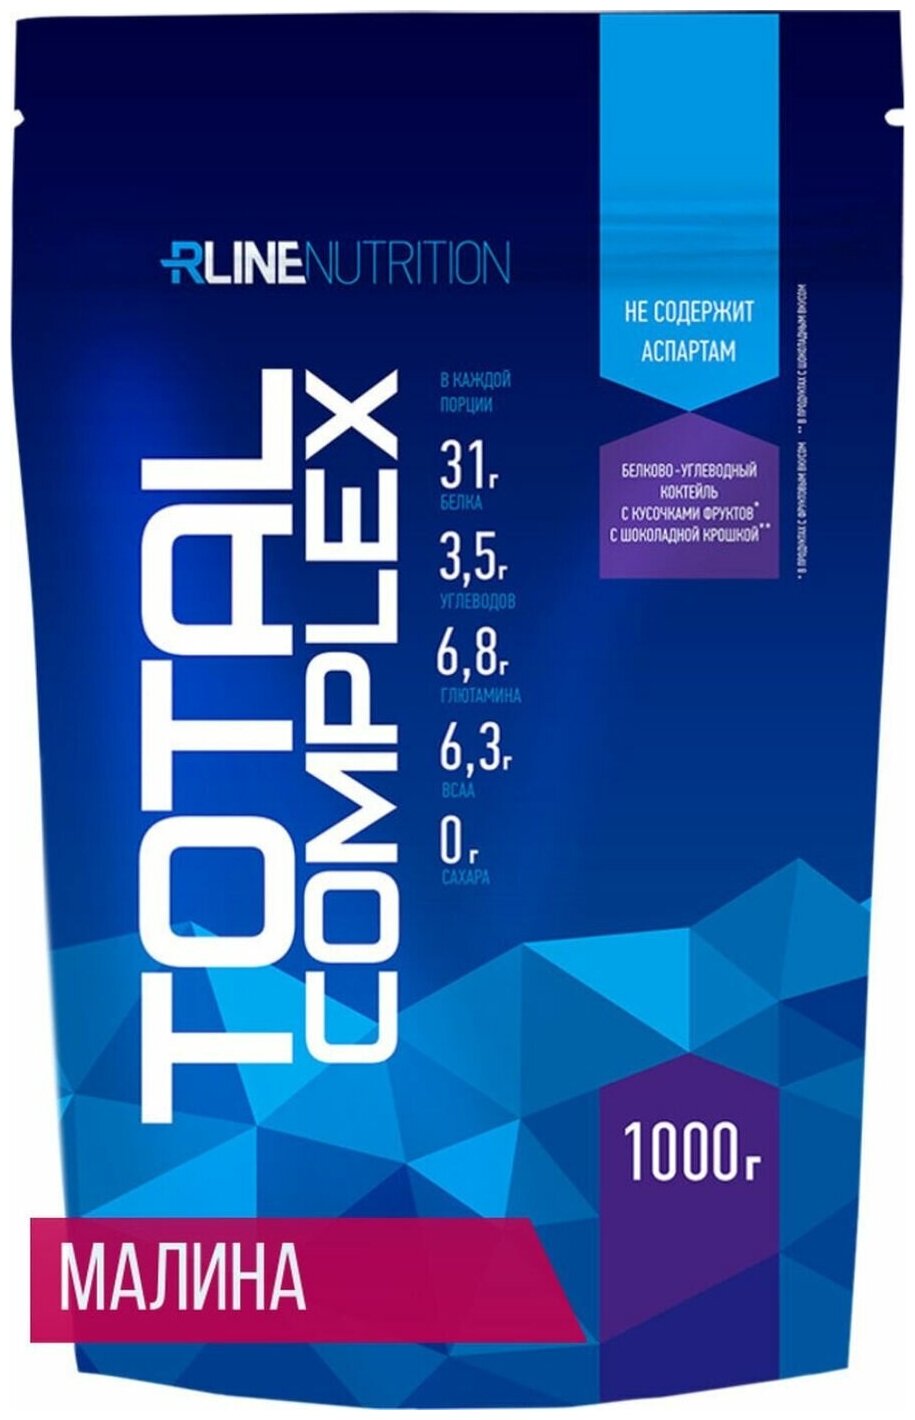 Протеин R-Line Total Complex мягкая упаковка, 1000 гр., малина